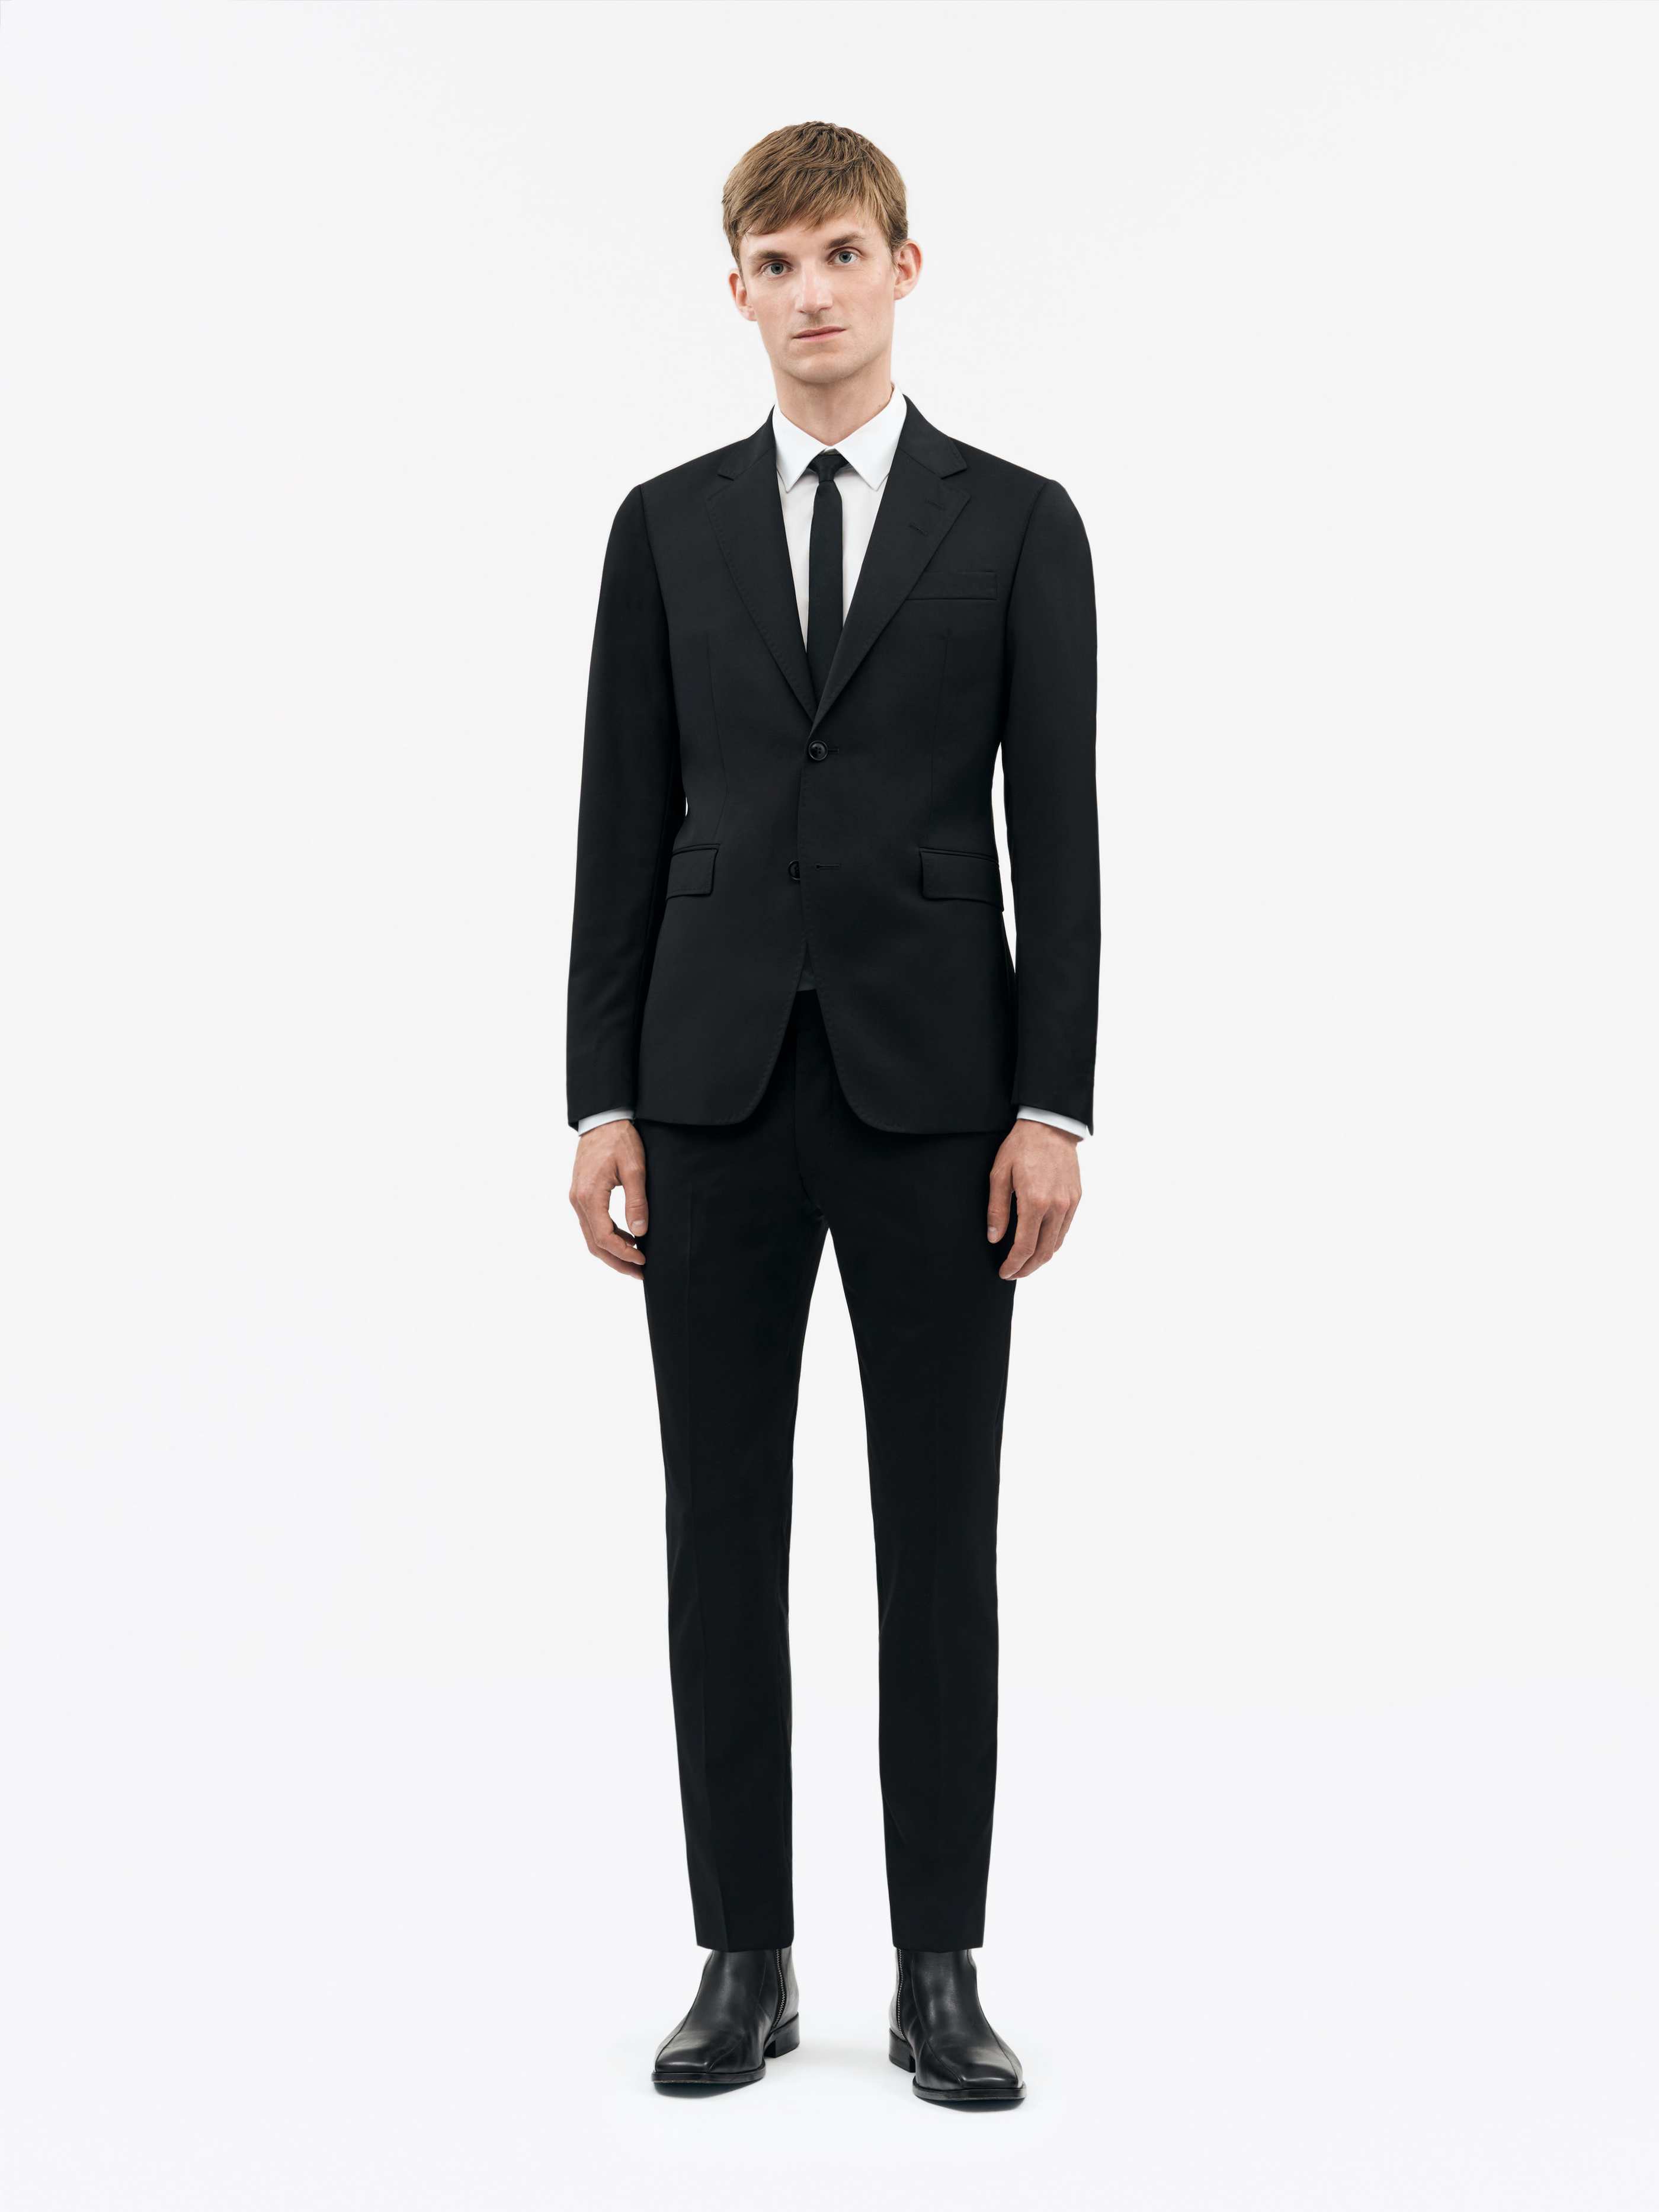 Justin Suit - Buy Suits online